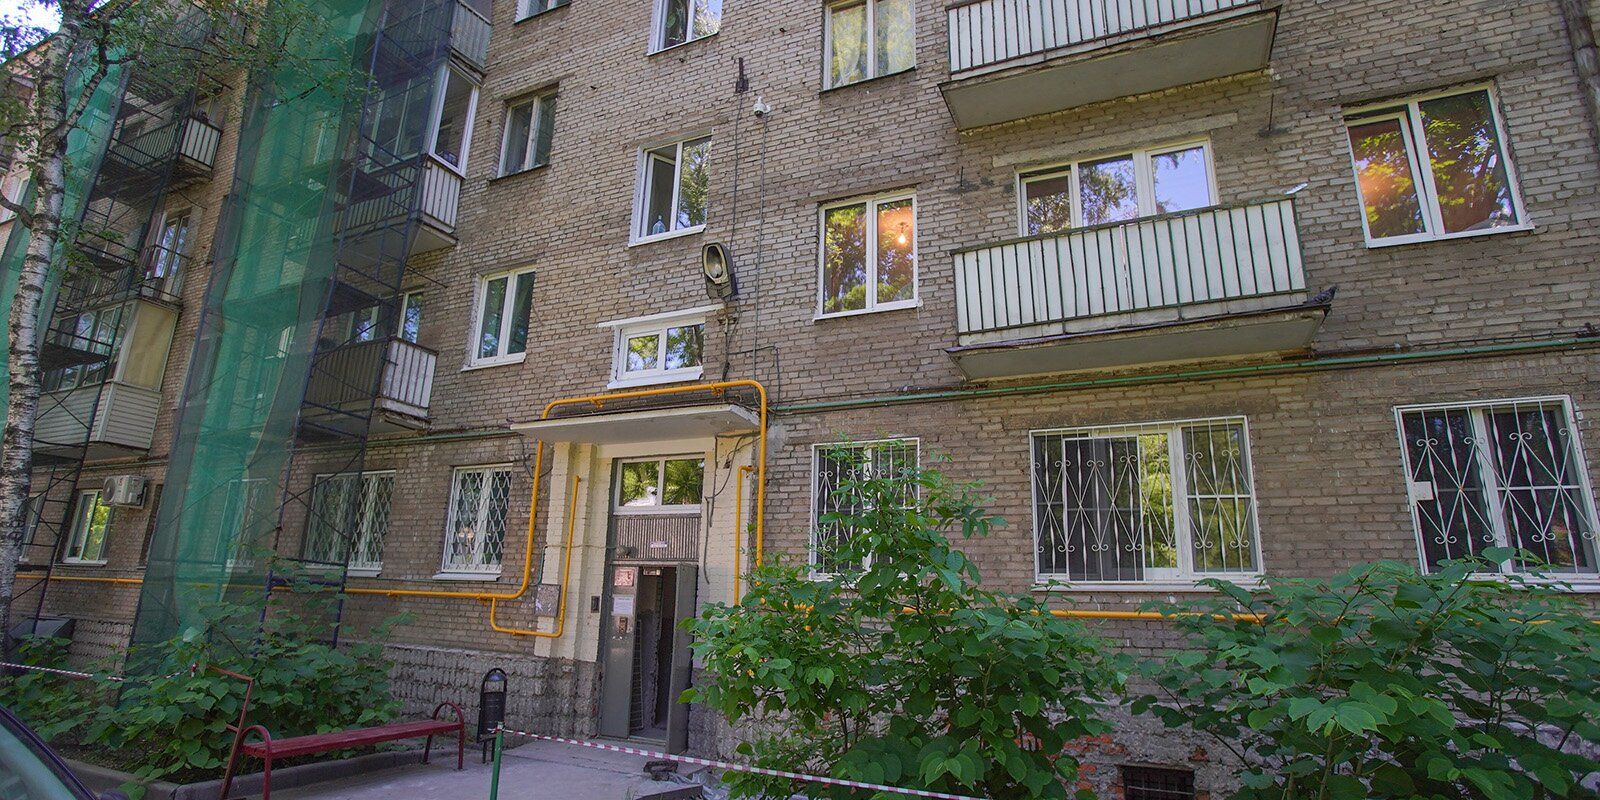 4 дом соляра в 4 доме радикса. Дом 1959 года постройки. Переулок Даниловский 9 Томск.